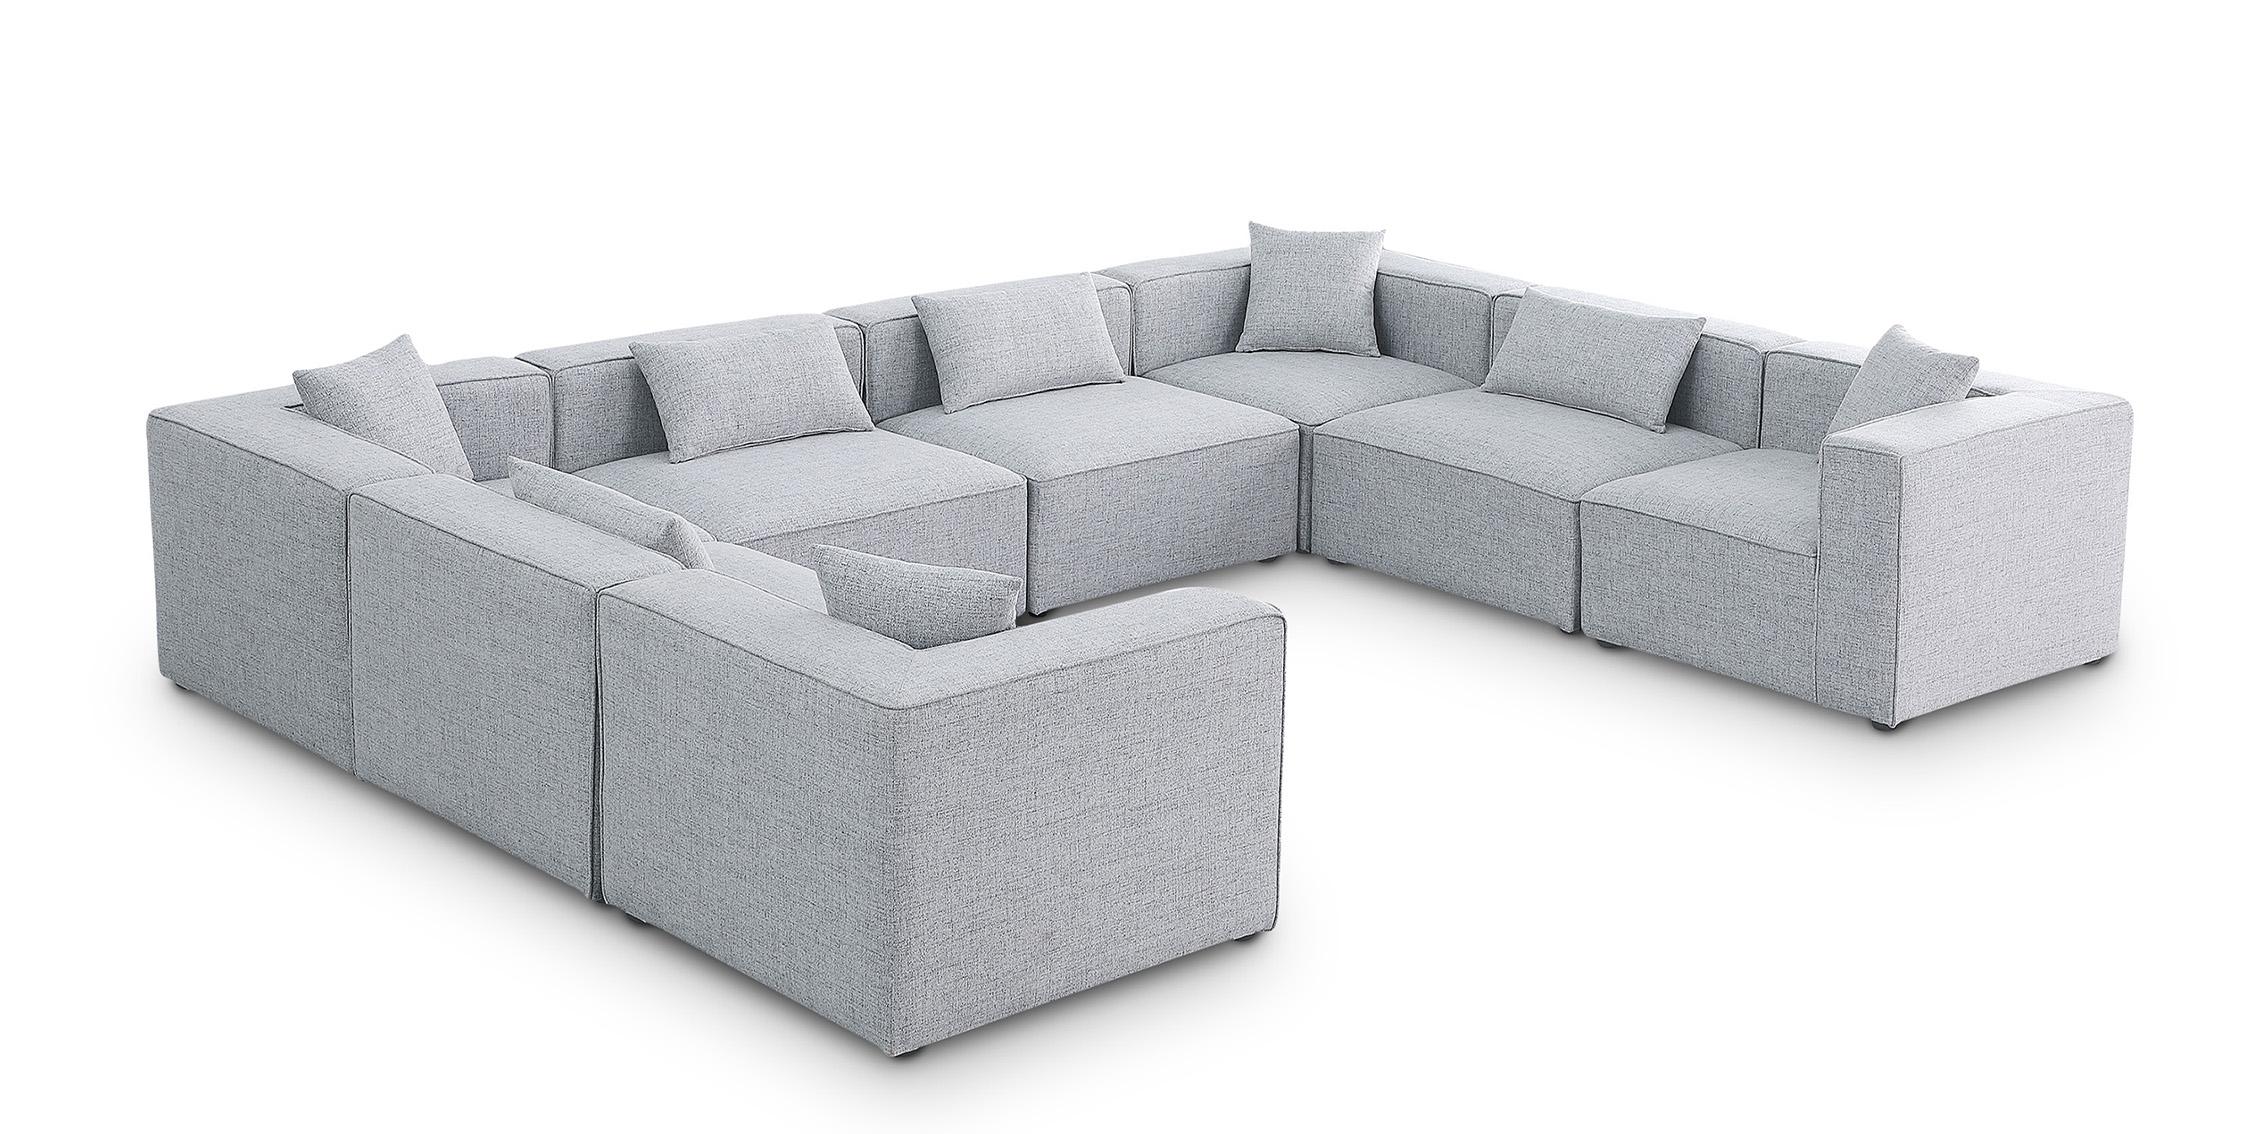 Contemporary, Modern Modular Sectional Sofa CUBE 630Grey-Sec8A 630Grey-Sec8A in Gray Linen